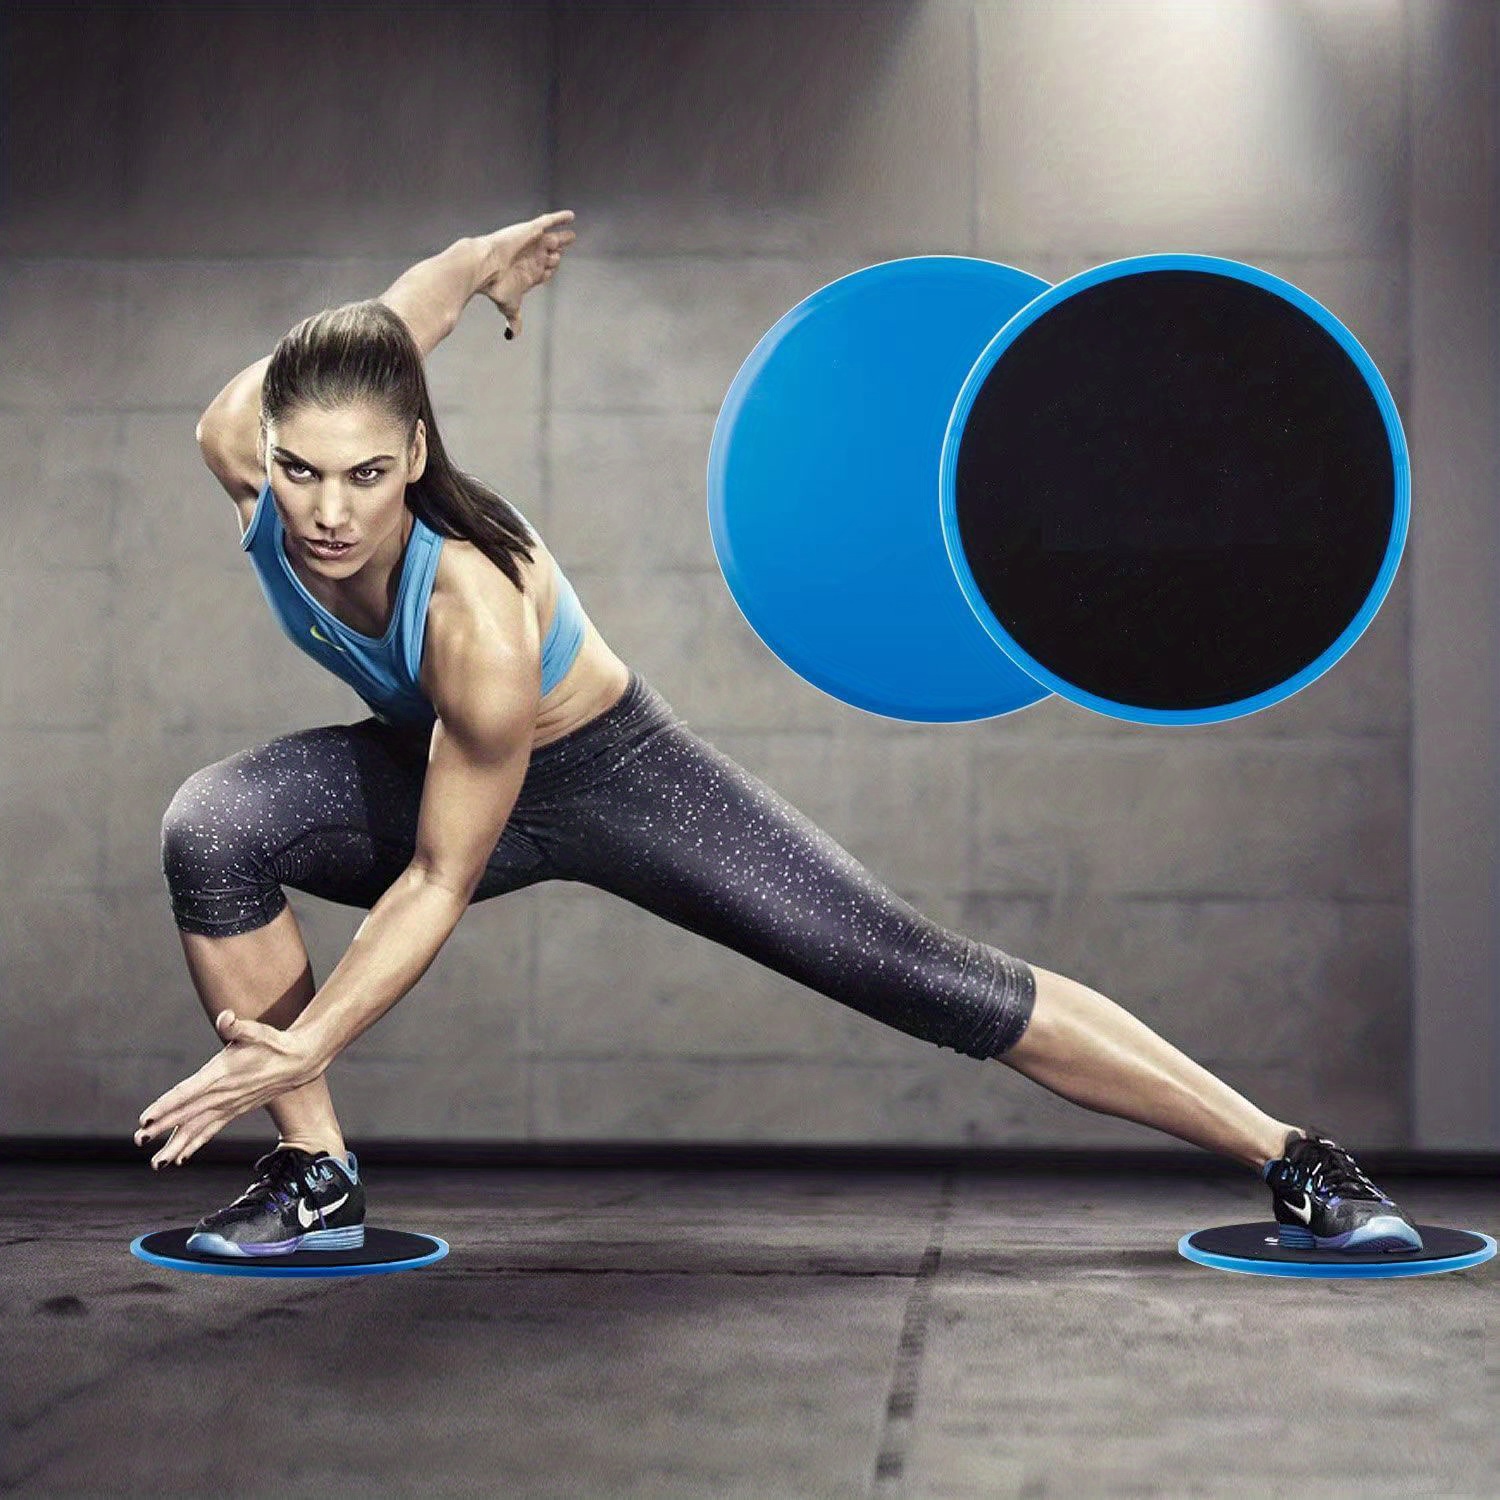 Exercise Sliding Gliding Disc Fitness Core Slider Sport Full Body Workout  2pcs 